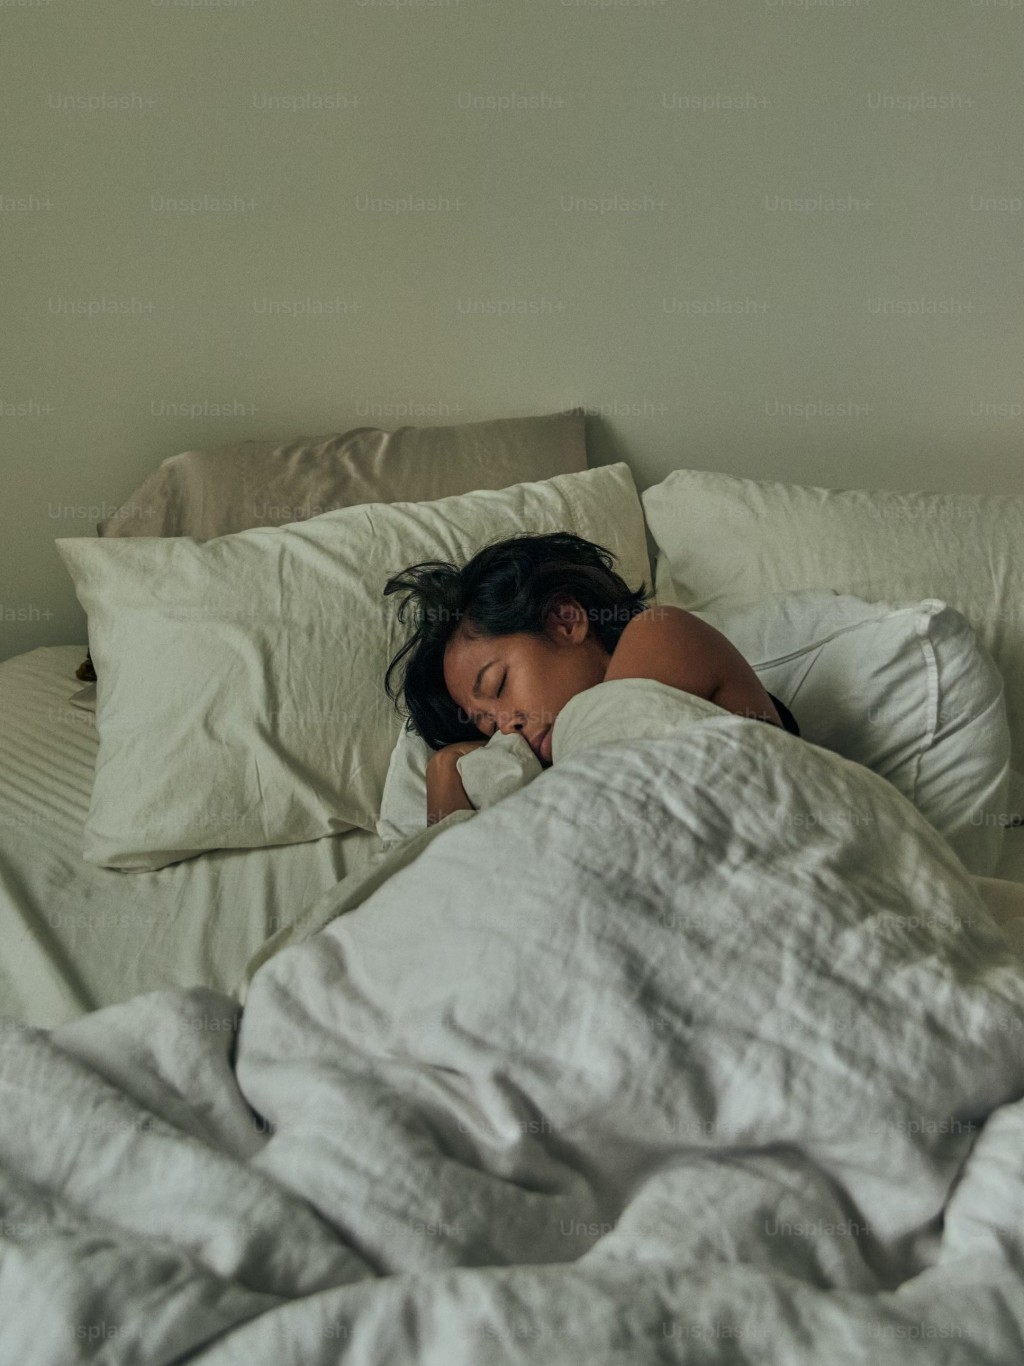 專家指裸睡能減輕壓力和焦慮。 unsplash